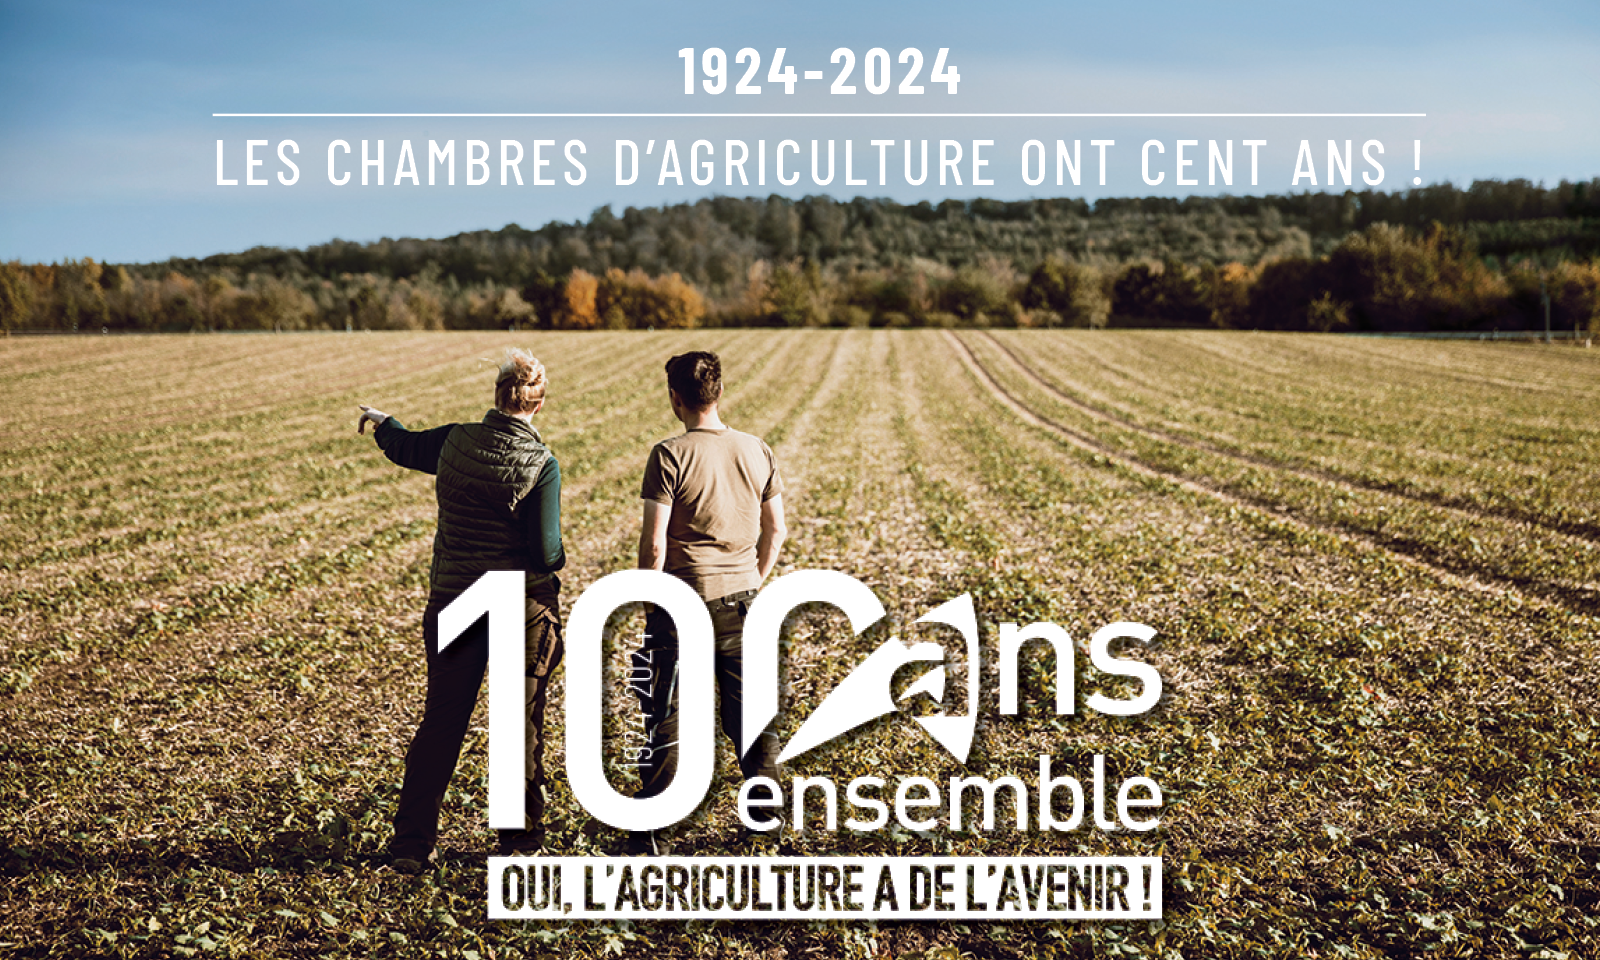  1924-2024 : LES CHAMBRES D’AGRICULTURE ONT CENT ANS ! - Chambres d'agriculture Provence-Alpes-Côte d'Azur